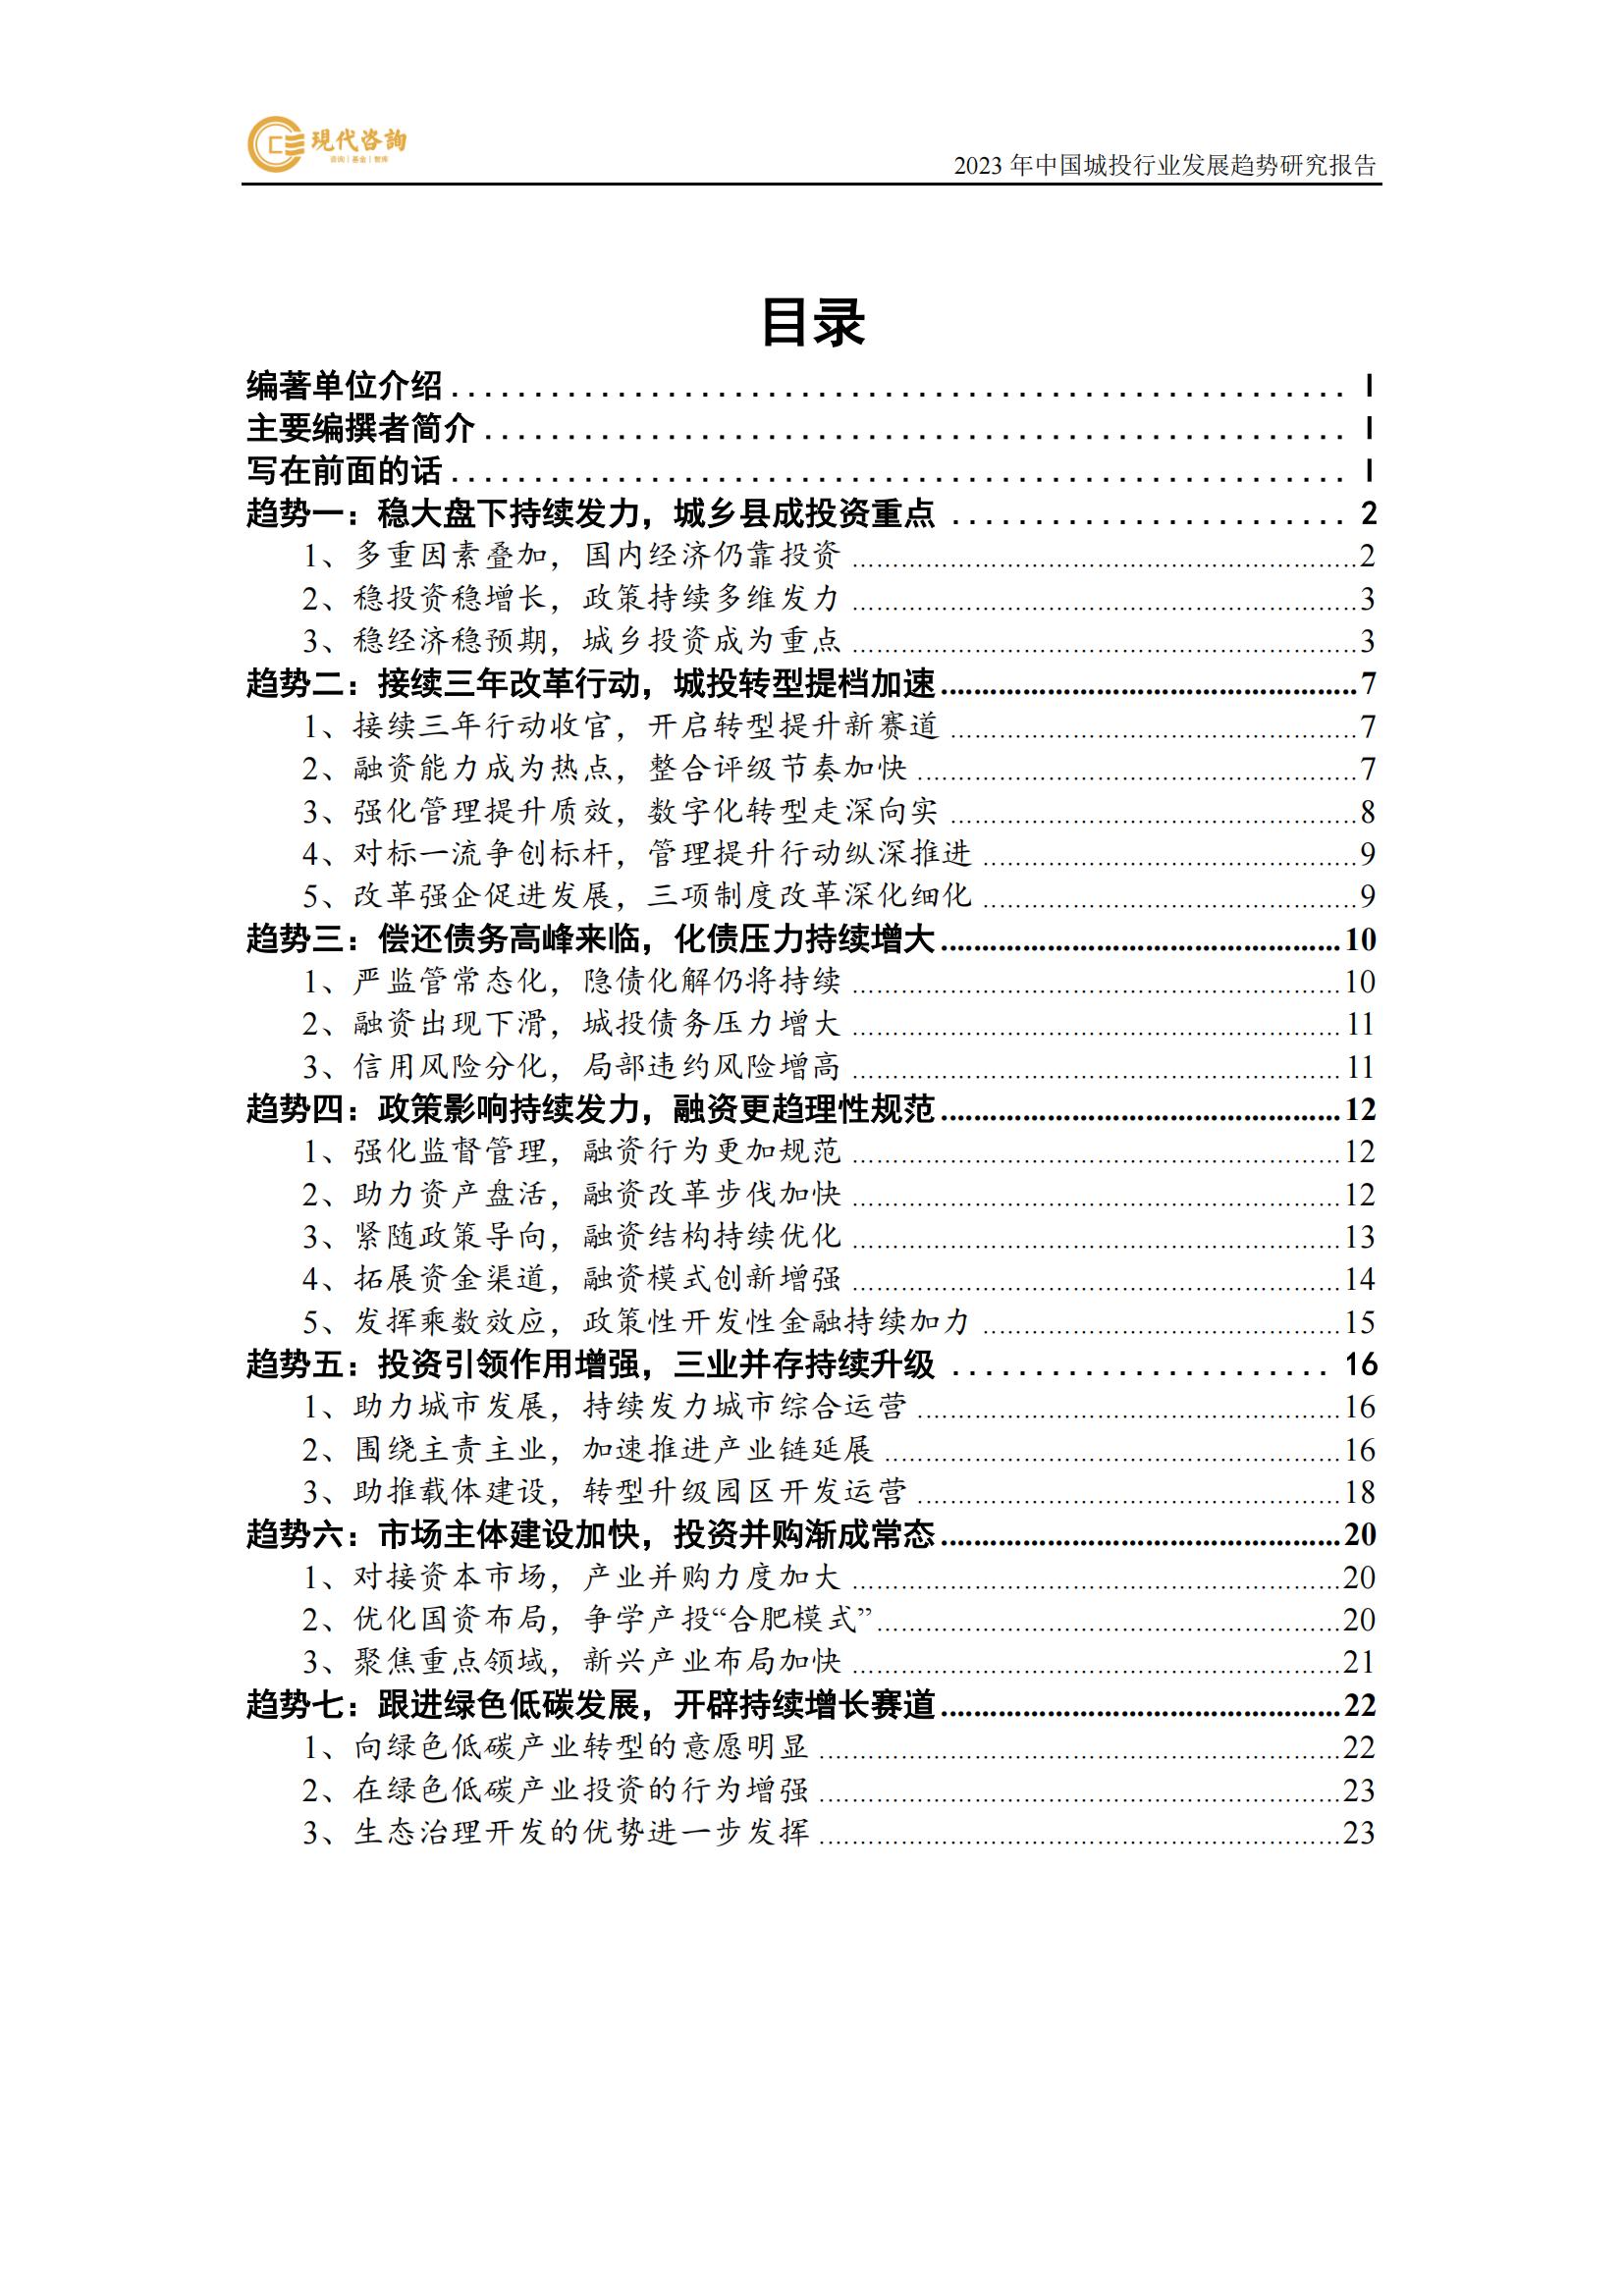 中國城投行業發展趨勢研究報告（2023）(2)_07.jpg